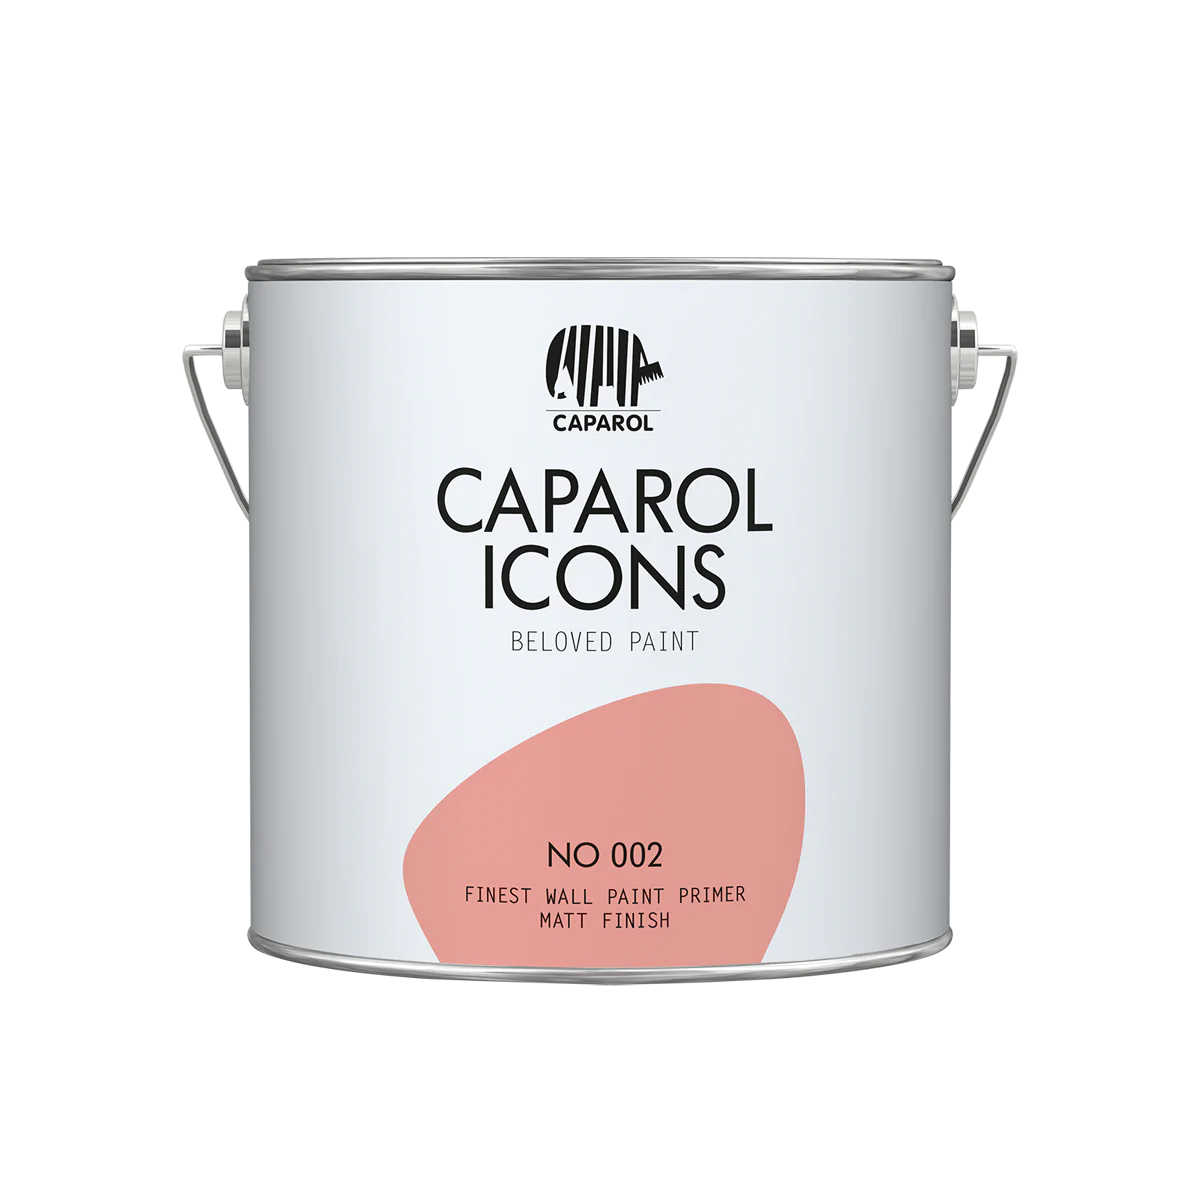 Caparol ICONS FINEST WALL PRIMER NO 002, 2,5l